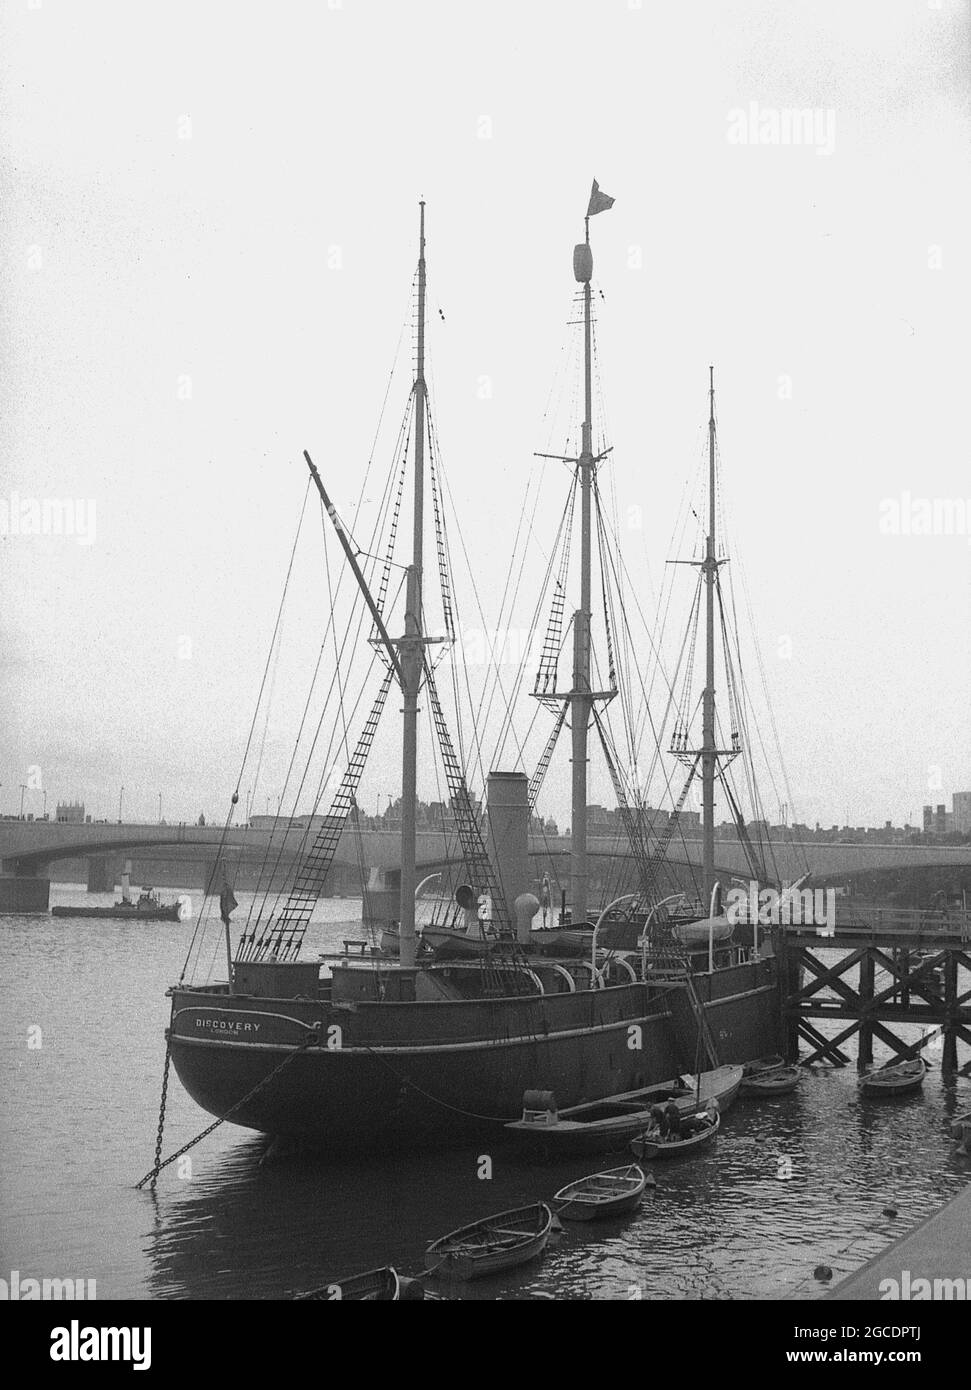 1950er Jahre, historische Ansicht des berühmten Barque-Rigged-Segelschiffs "RRS Discovery" auf der Themse, London, England, Großbritannien, das letzte hölzerne Dreimast-Schiff, das in Großbritannien gebaut wurde. Sie war ein Segelschiff mit einem zusätzlichen Dampfantrieb und wurde in Dundee, Schottland, gebaut. Ihre erste Reise, die als Discovery Expedition (1901-1904) bekannt ist, wurde speziell für die Antarktisforschung gebaut und führte die britischen Forscher Robert Falcon Scott und Ernest Shackletone in die Region. Nachdem sie von 1929 bis 1931 in der australischen Antarktis war, wurde sie als statisches Trainingsschiff und Besucherattraktion auf der Themse festgemacht. Stockfoto